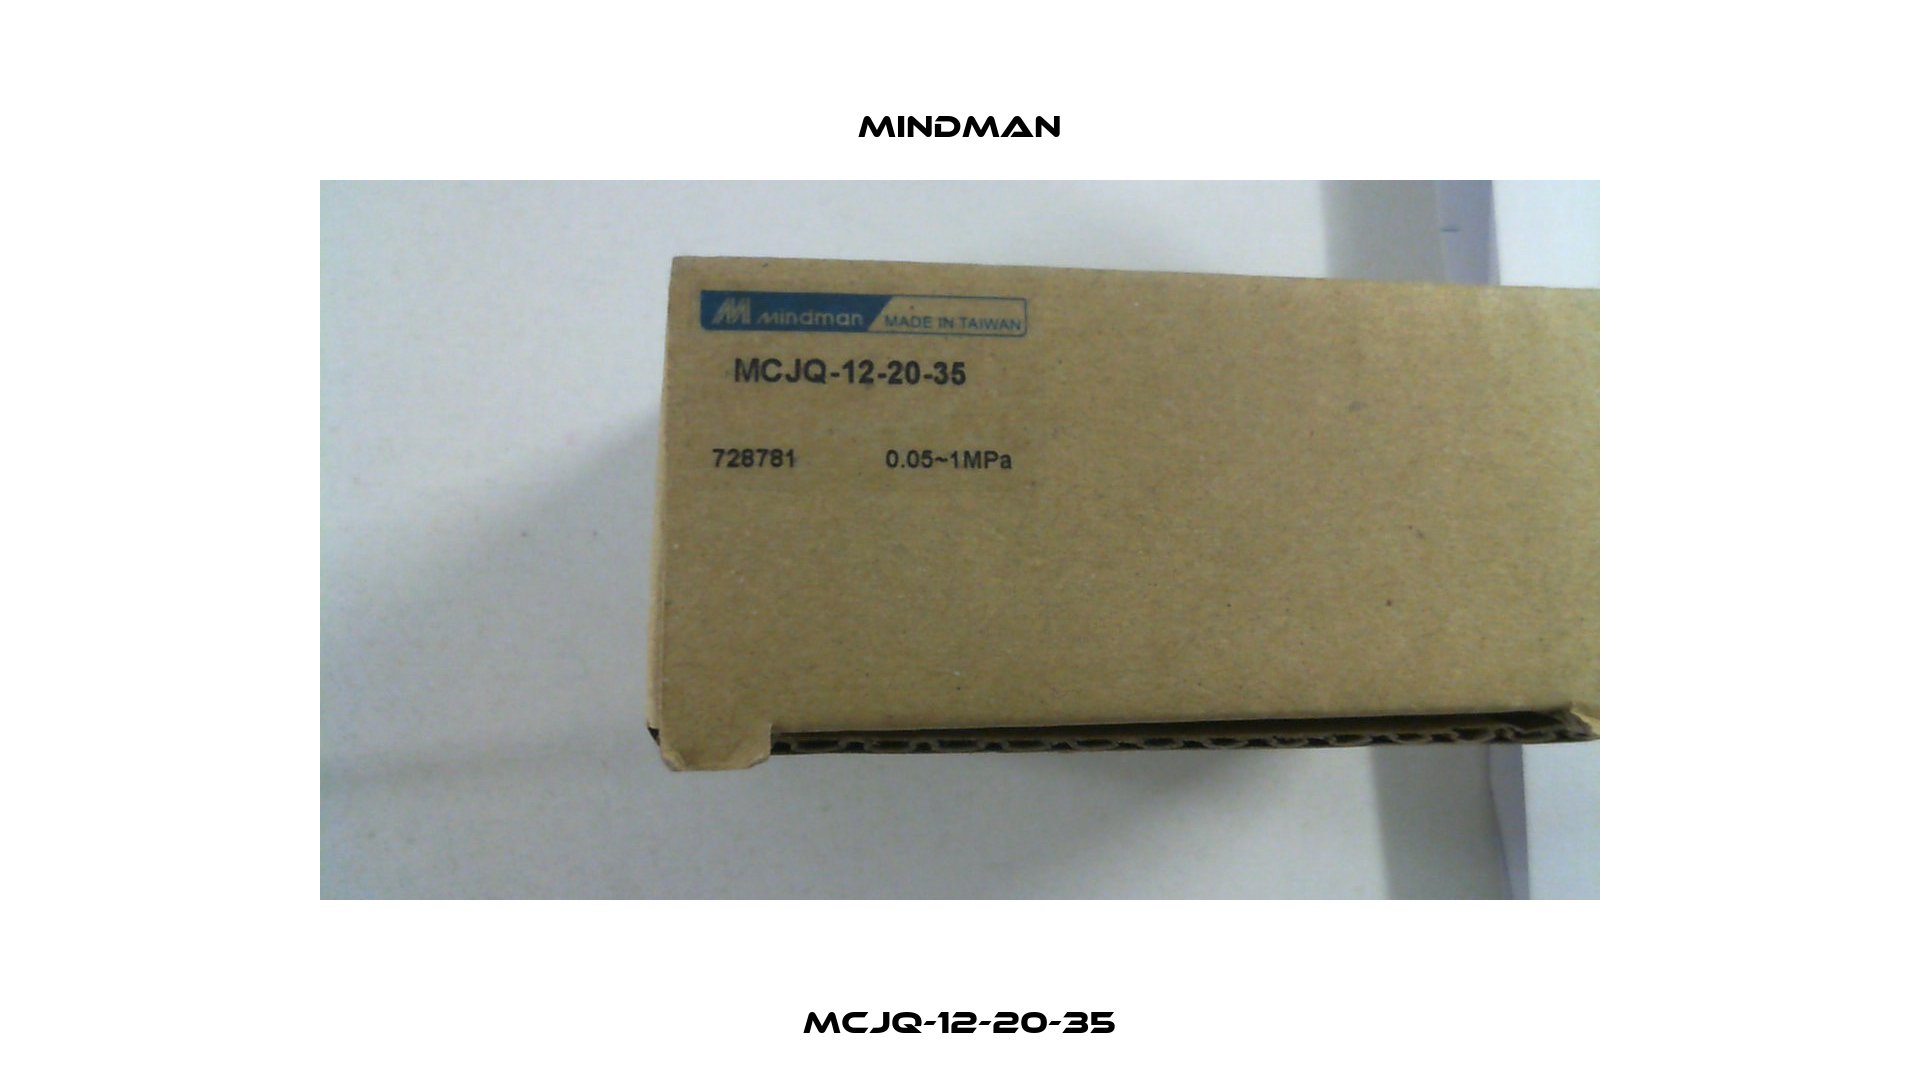 MCJQ-12-20-35 Mindman